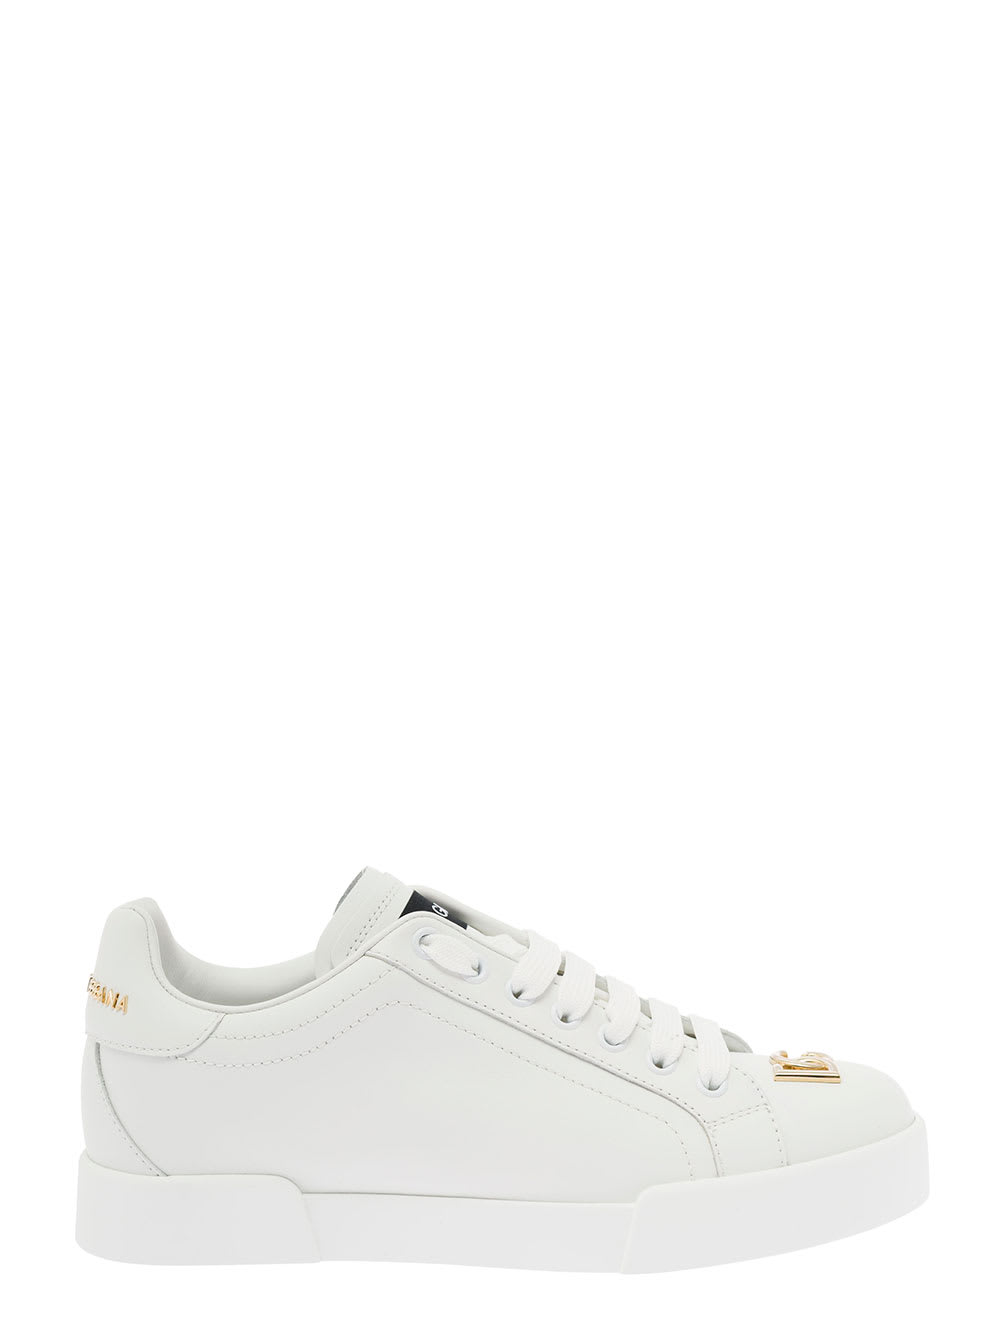 Dolce & Gabbana Womans Portofino White Leather Sneakers